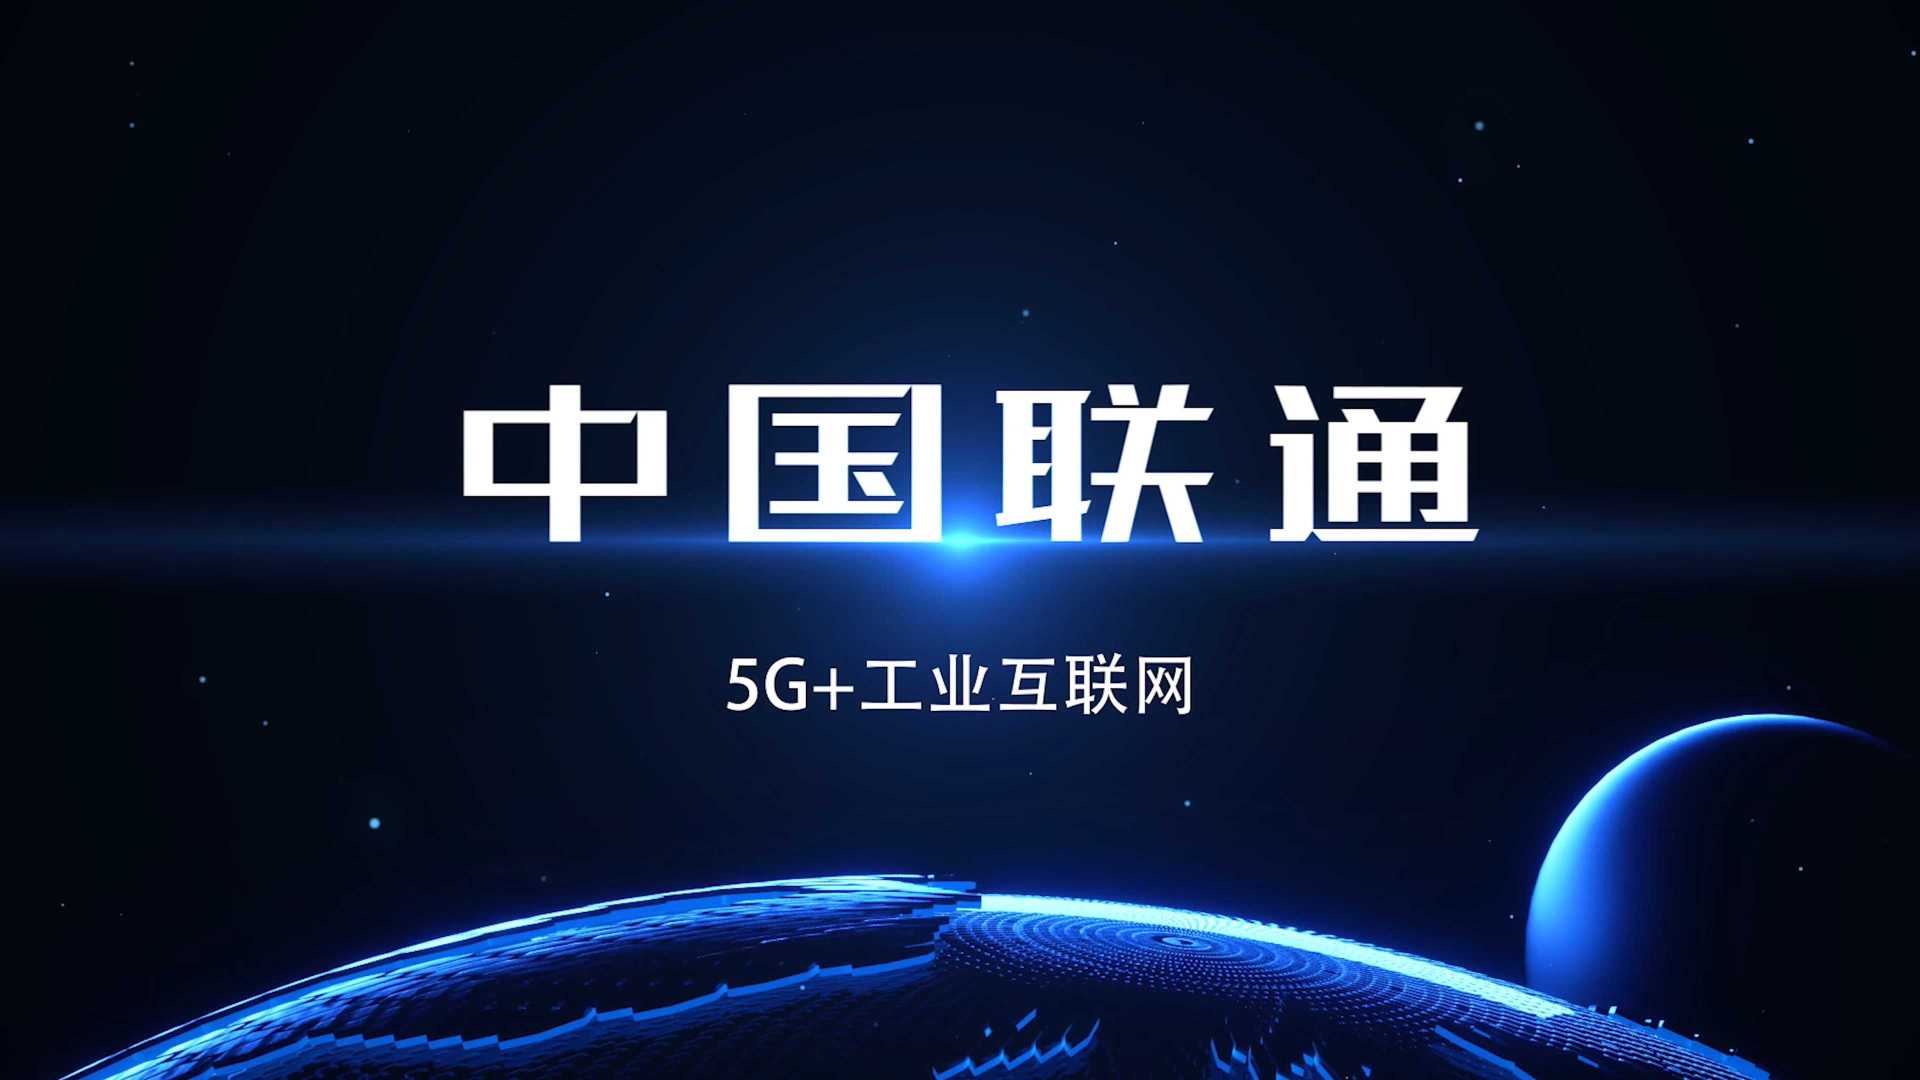 5G+工业互联网-雅戈尔